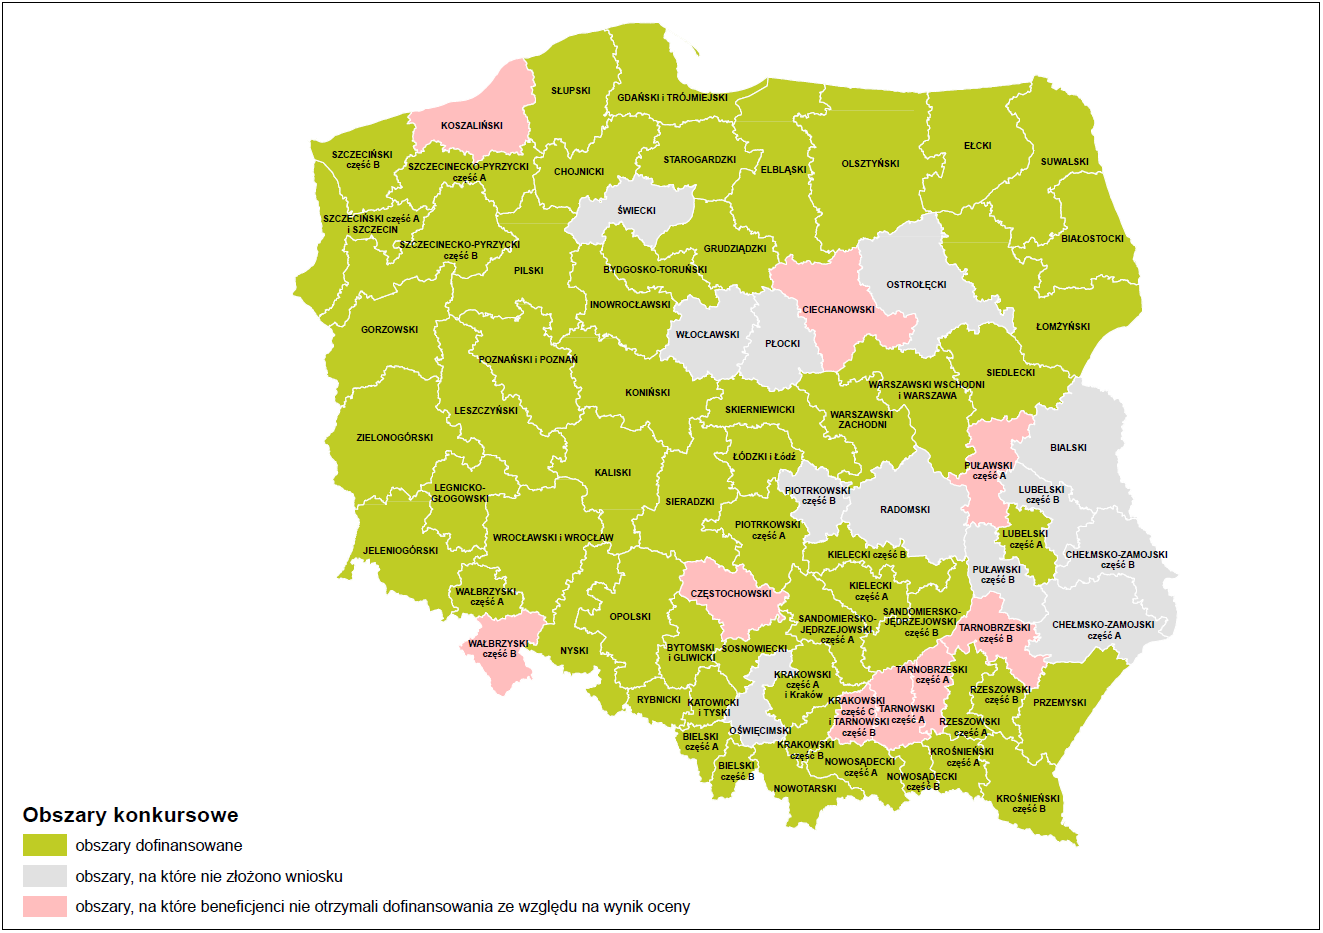 Mapa obszarów konkursowych Programu Polska Cyfrowa z wyszczególnieniem obszarów dofinansowanych; obszarów, na które nie złożono wniosku oraz obszarów, na które beneficjenci nie otrzymał dofinansowania ze względu na wynik oceny.